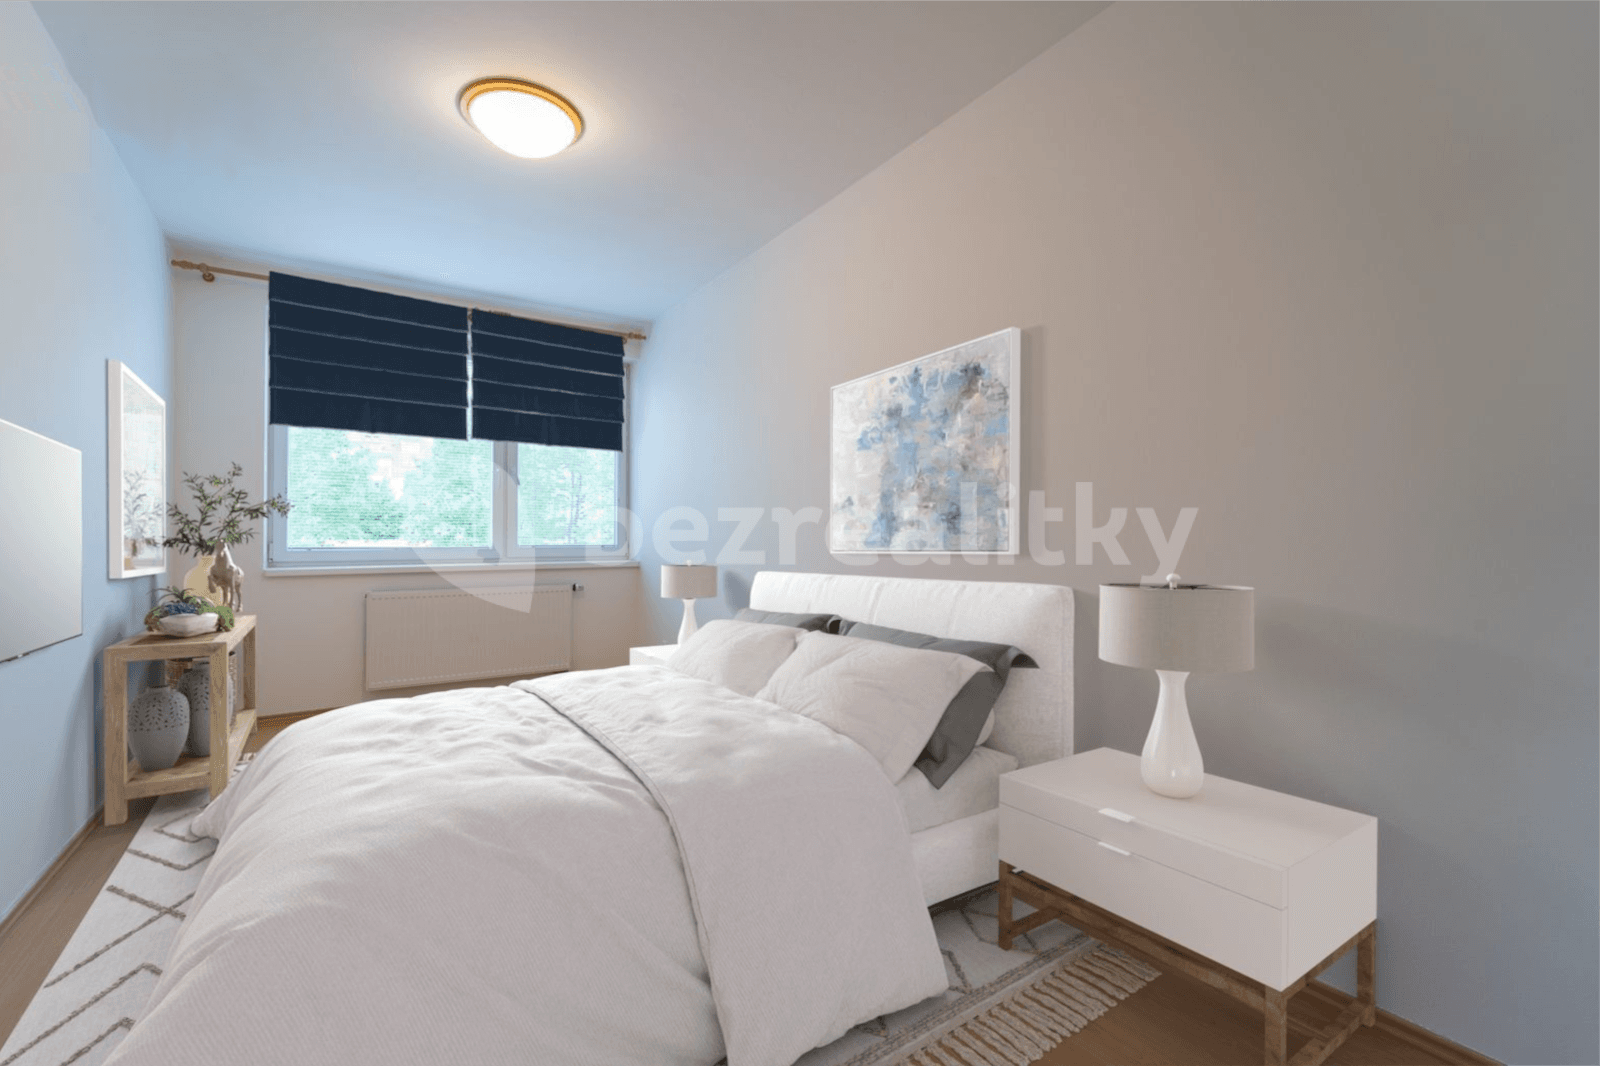 2 bedroom with open-plan kitchen flat for sale, 75 m², Leskauerova, Brno, Jihomoravský Region